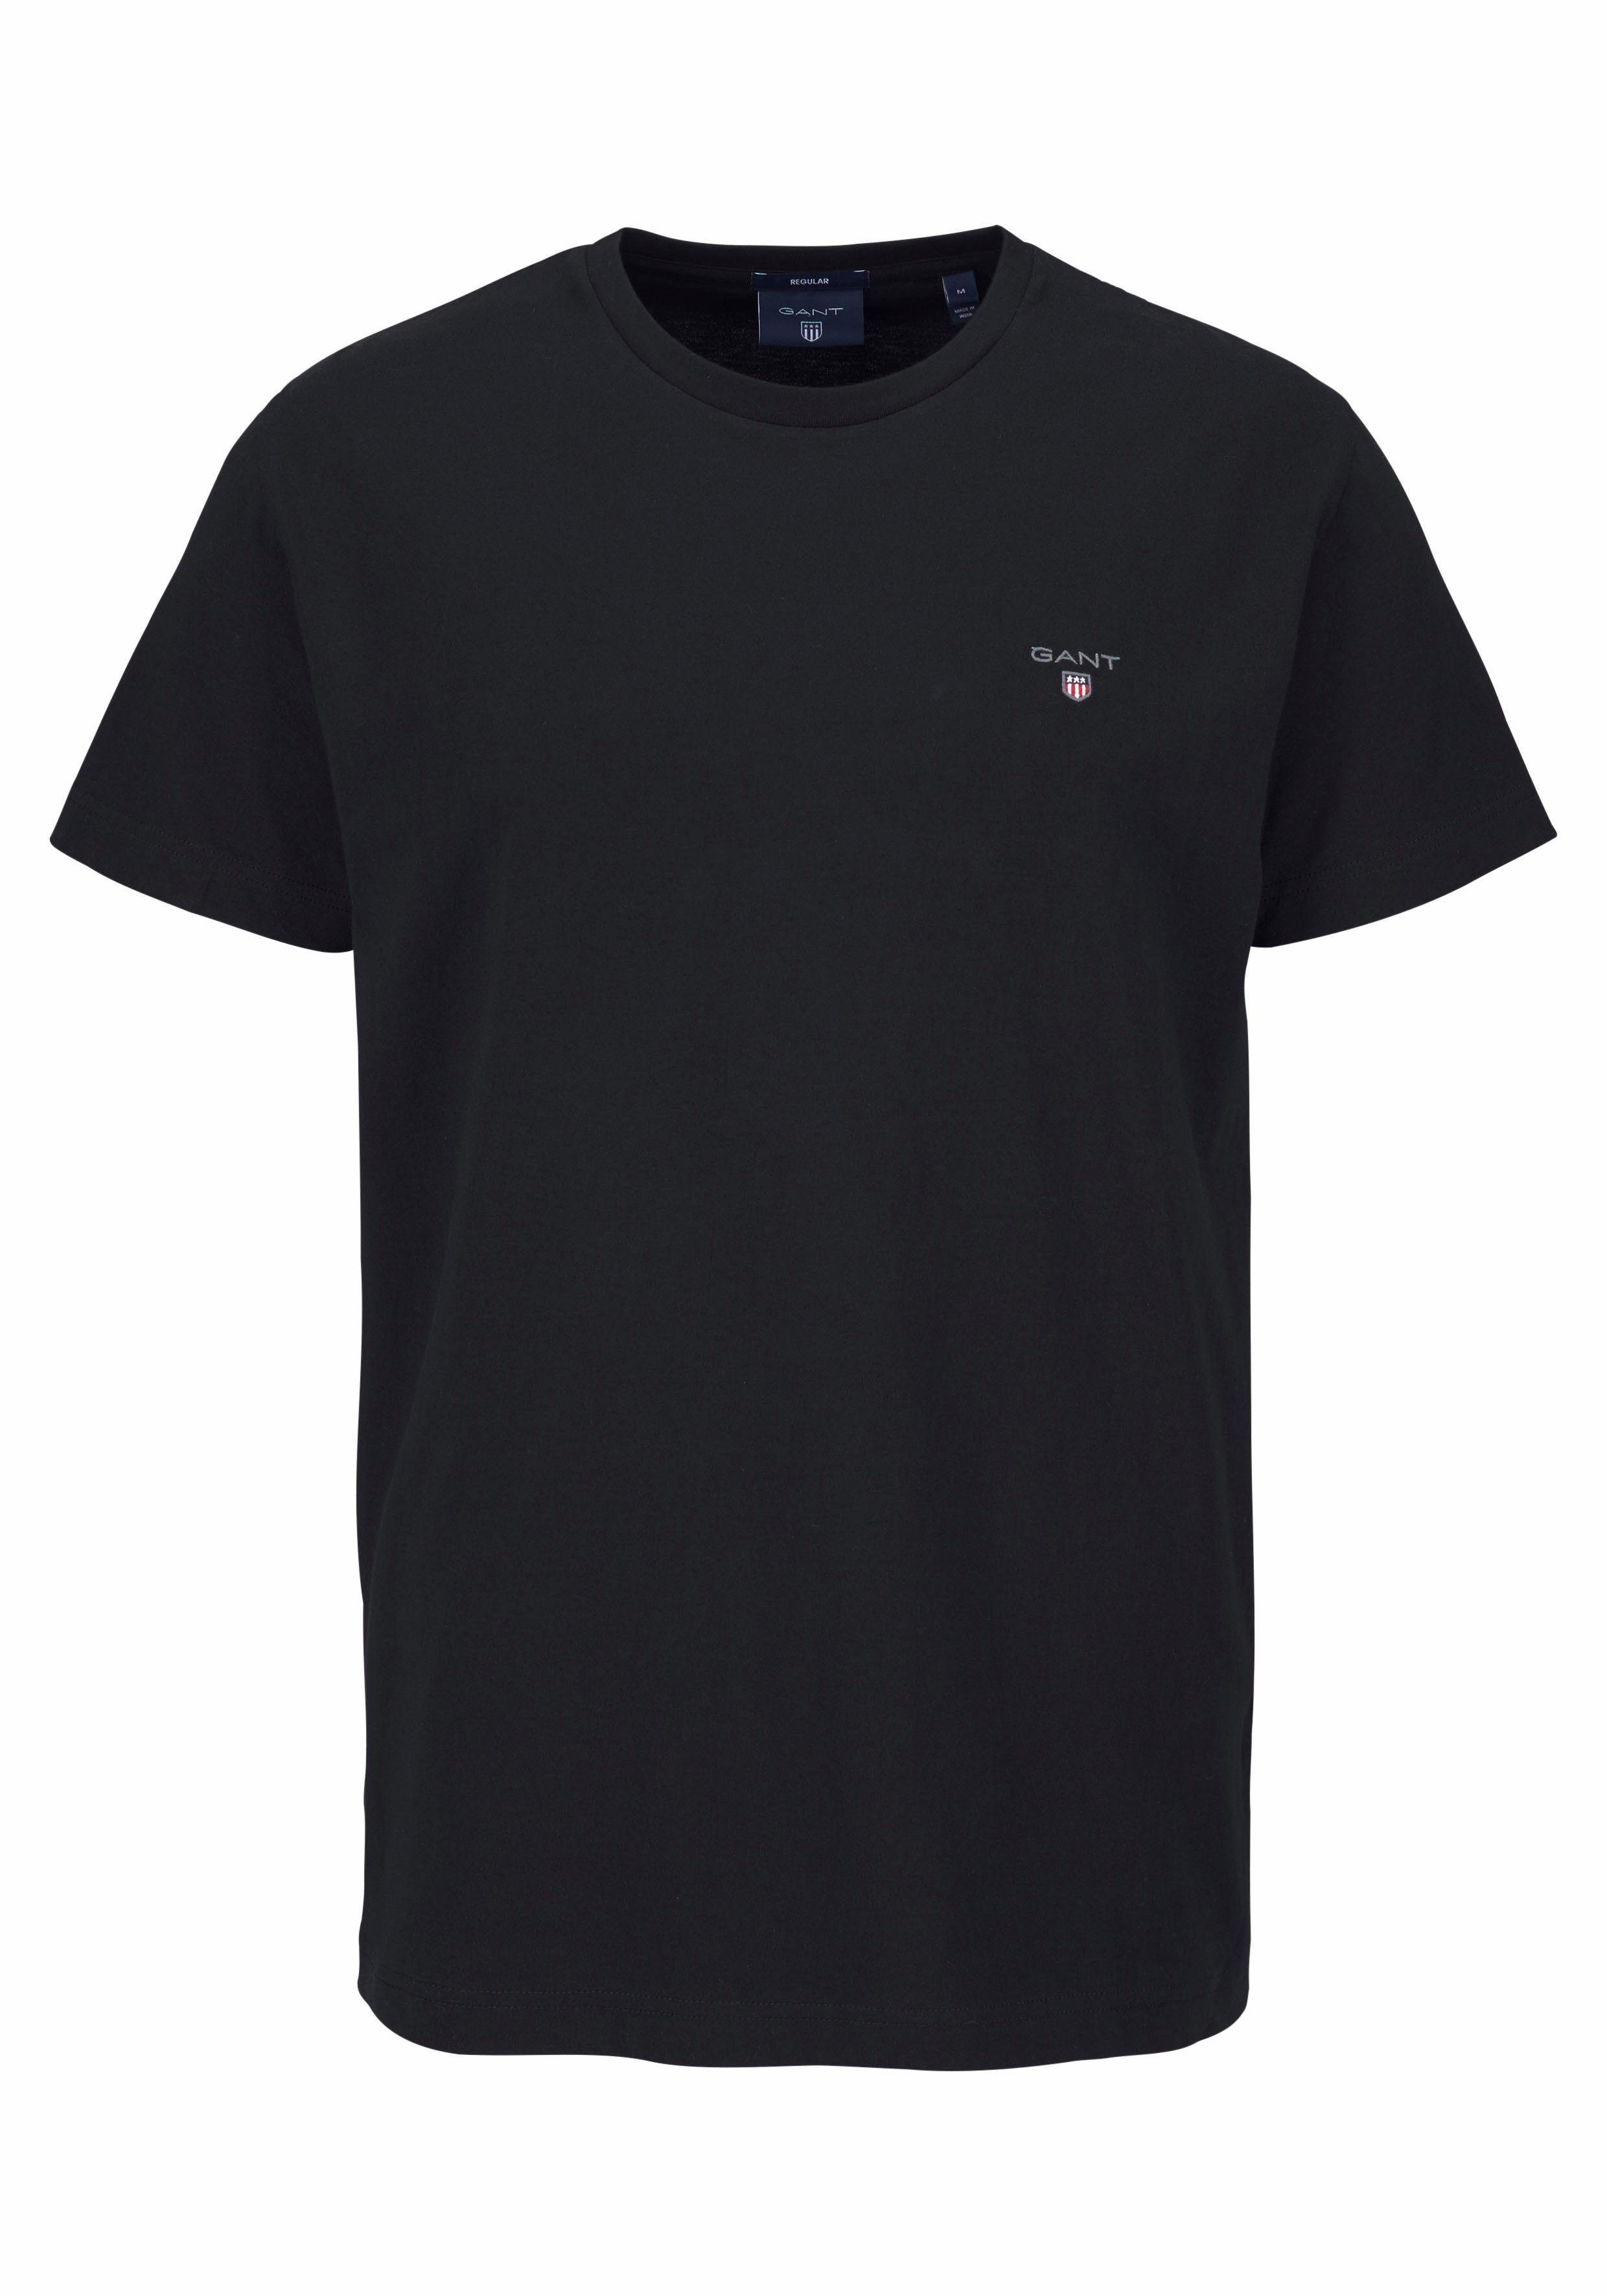 mit SS black Kontrast-Logostickerei T-Shirt kleiner Gant ORIGINAL T-SHIRT